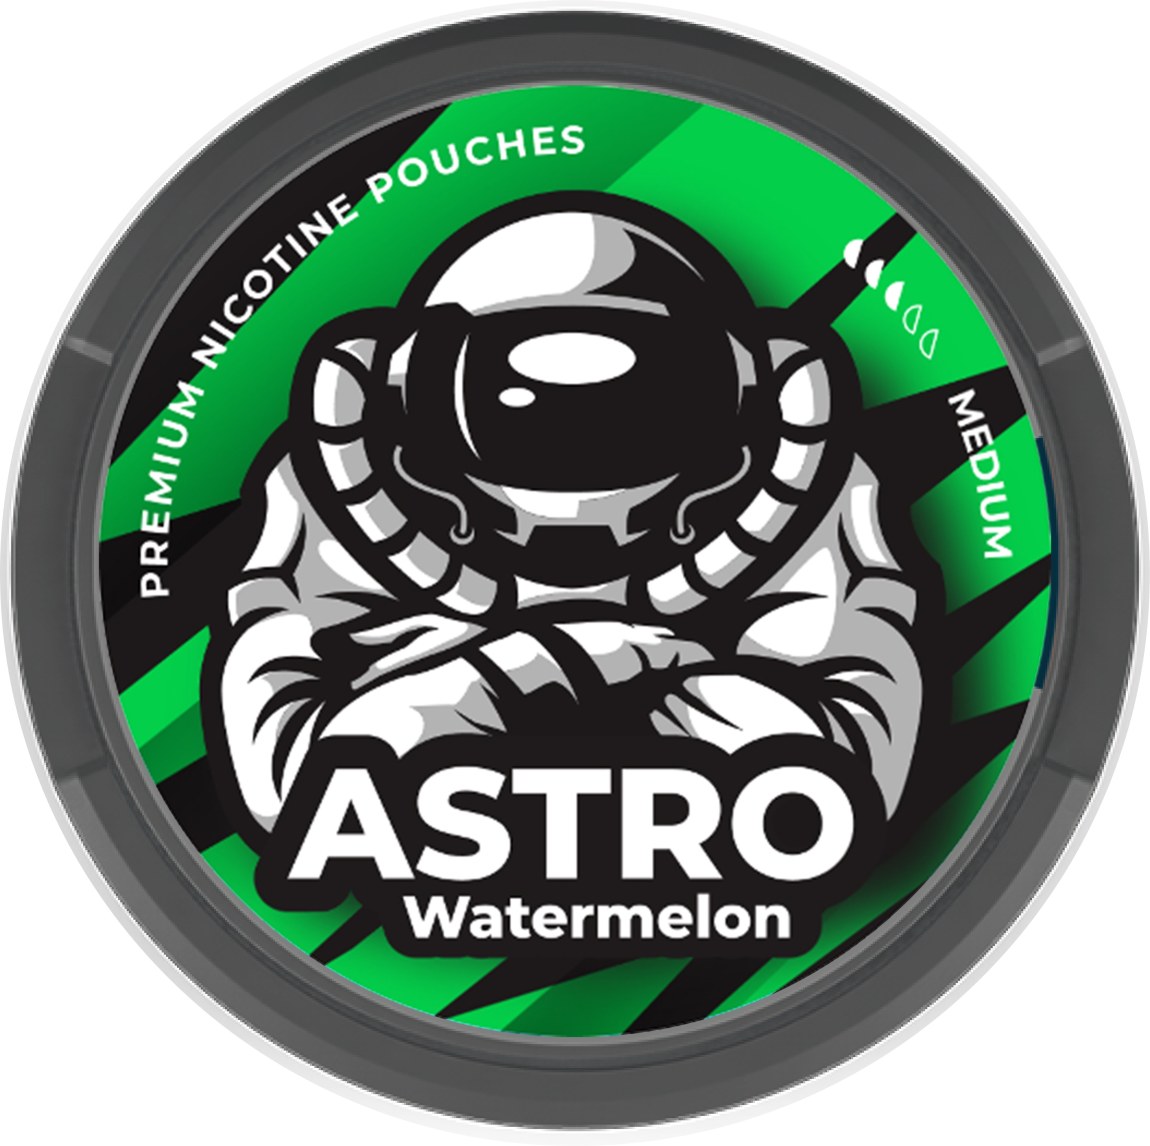 Astro Watermelon - Astro